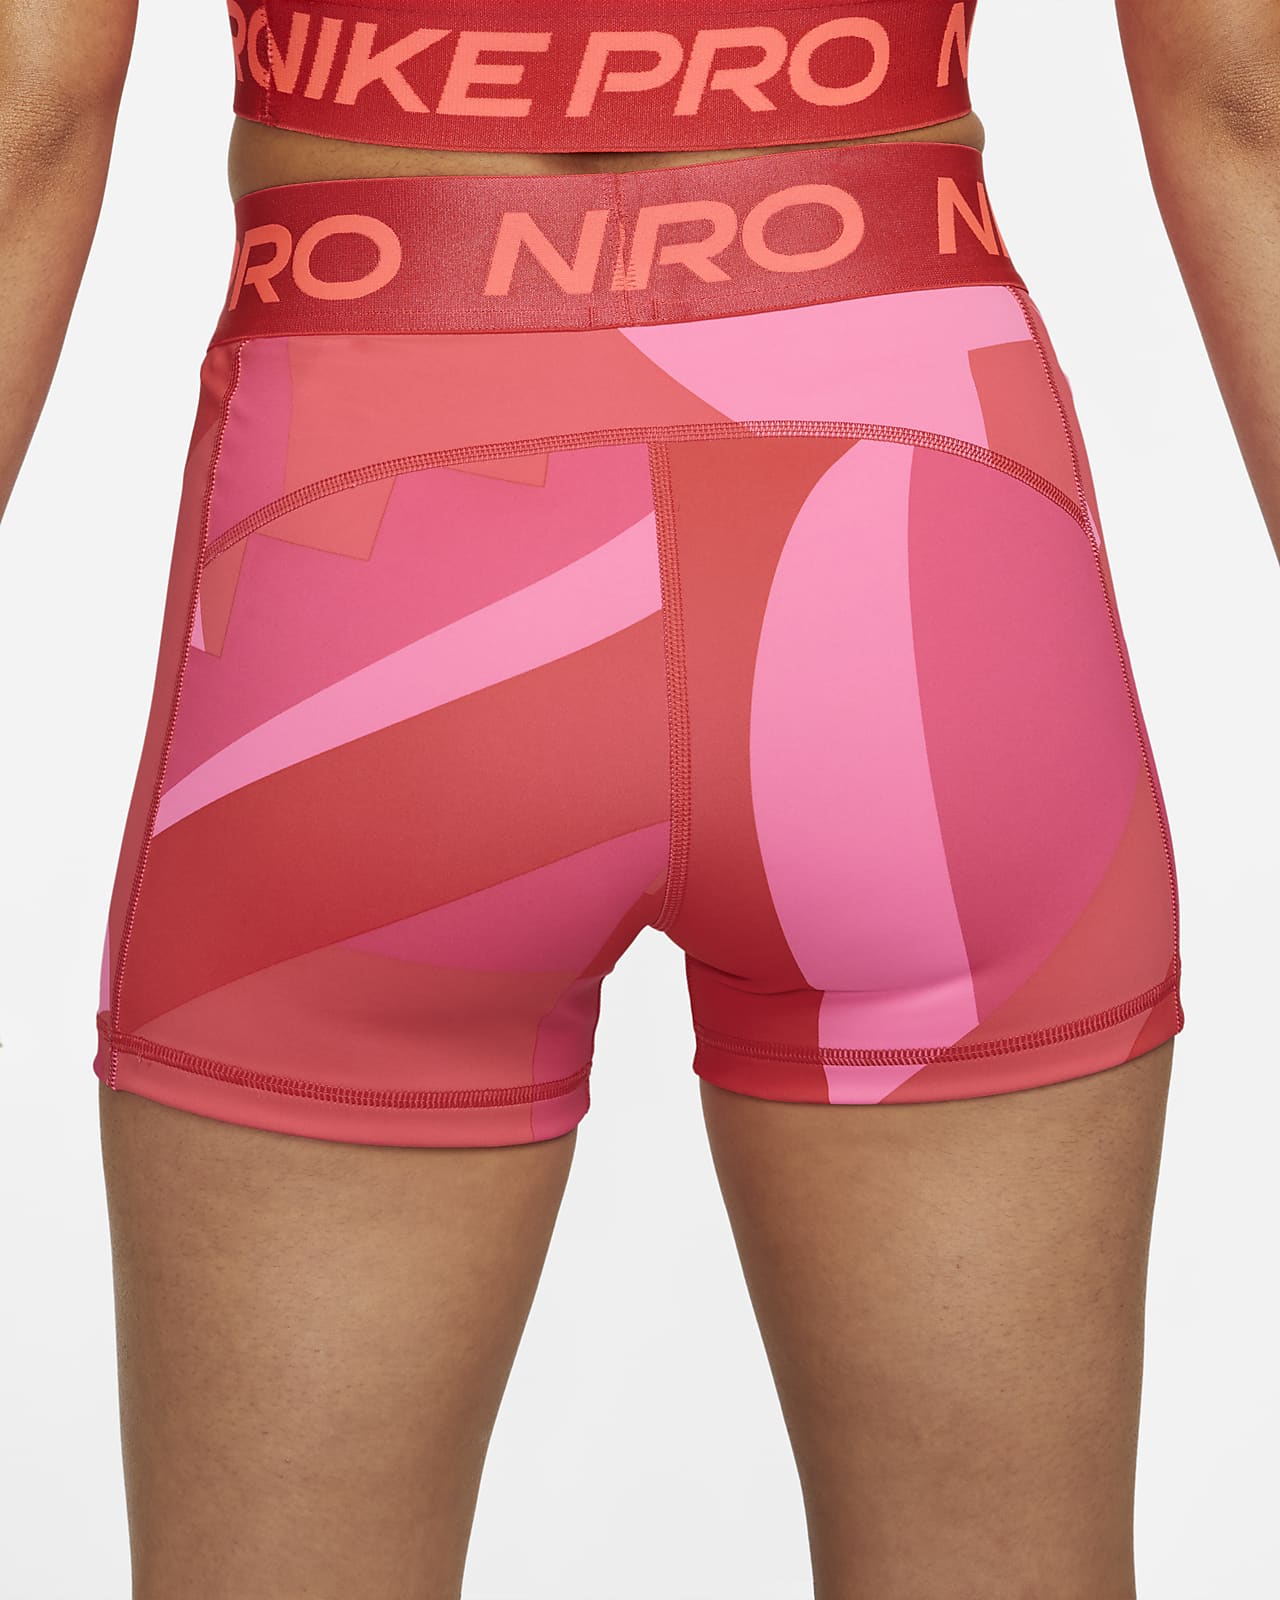 nike pro shorts 3 inch medium